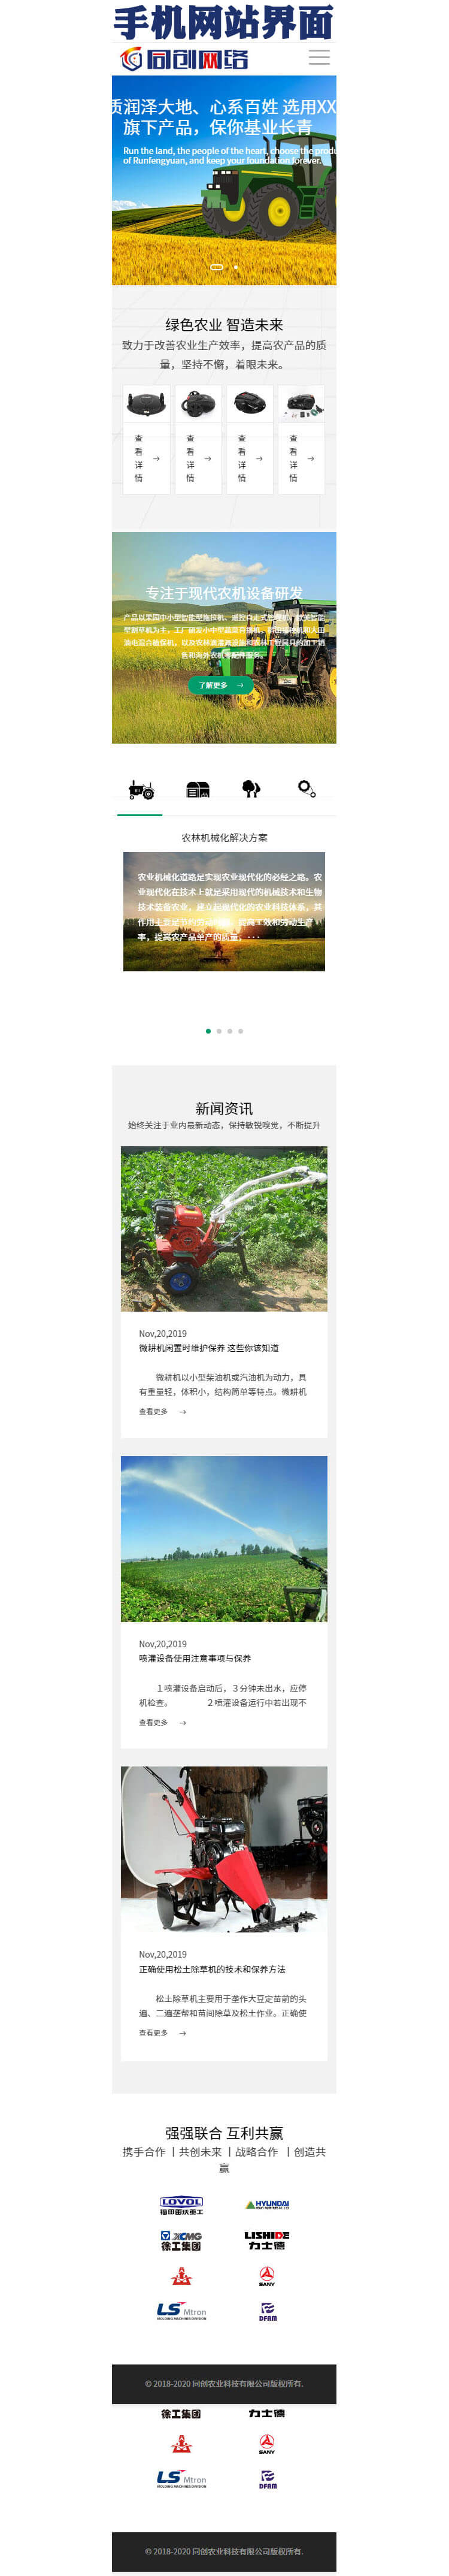 农业机械中英日三语企业网站源码程序-EN012-4